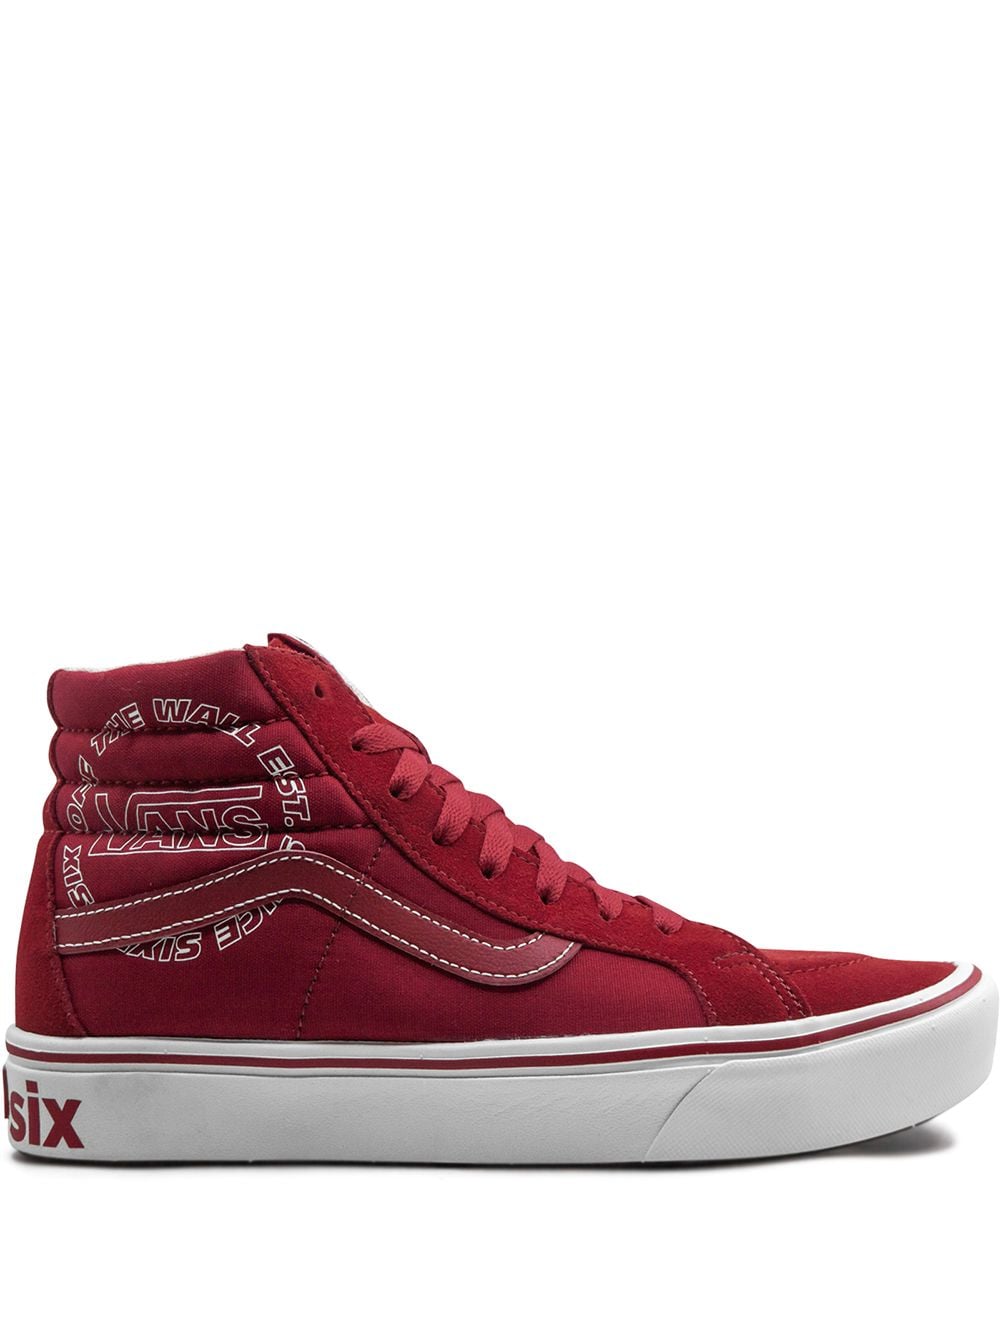 Vans Comfycush Sk8-Hi sneakers - Red von Vans